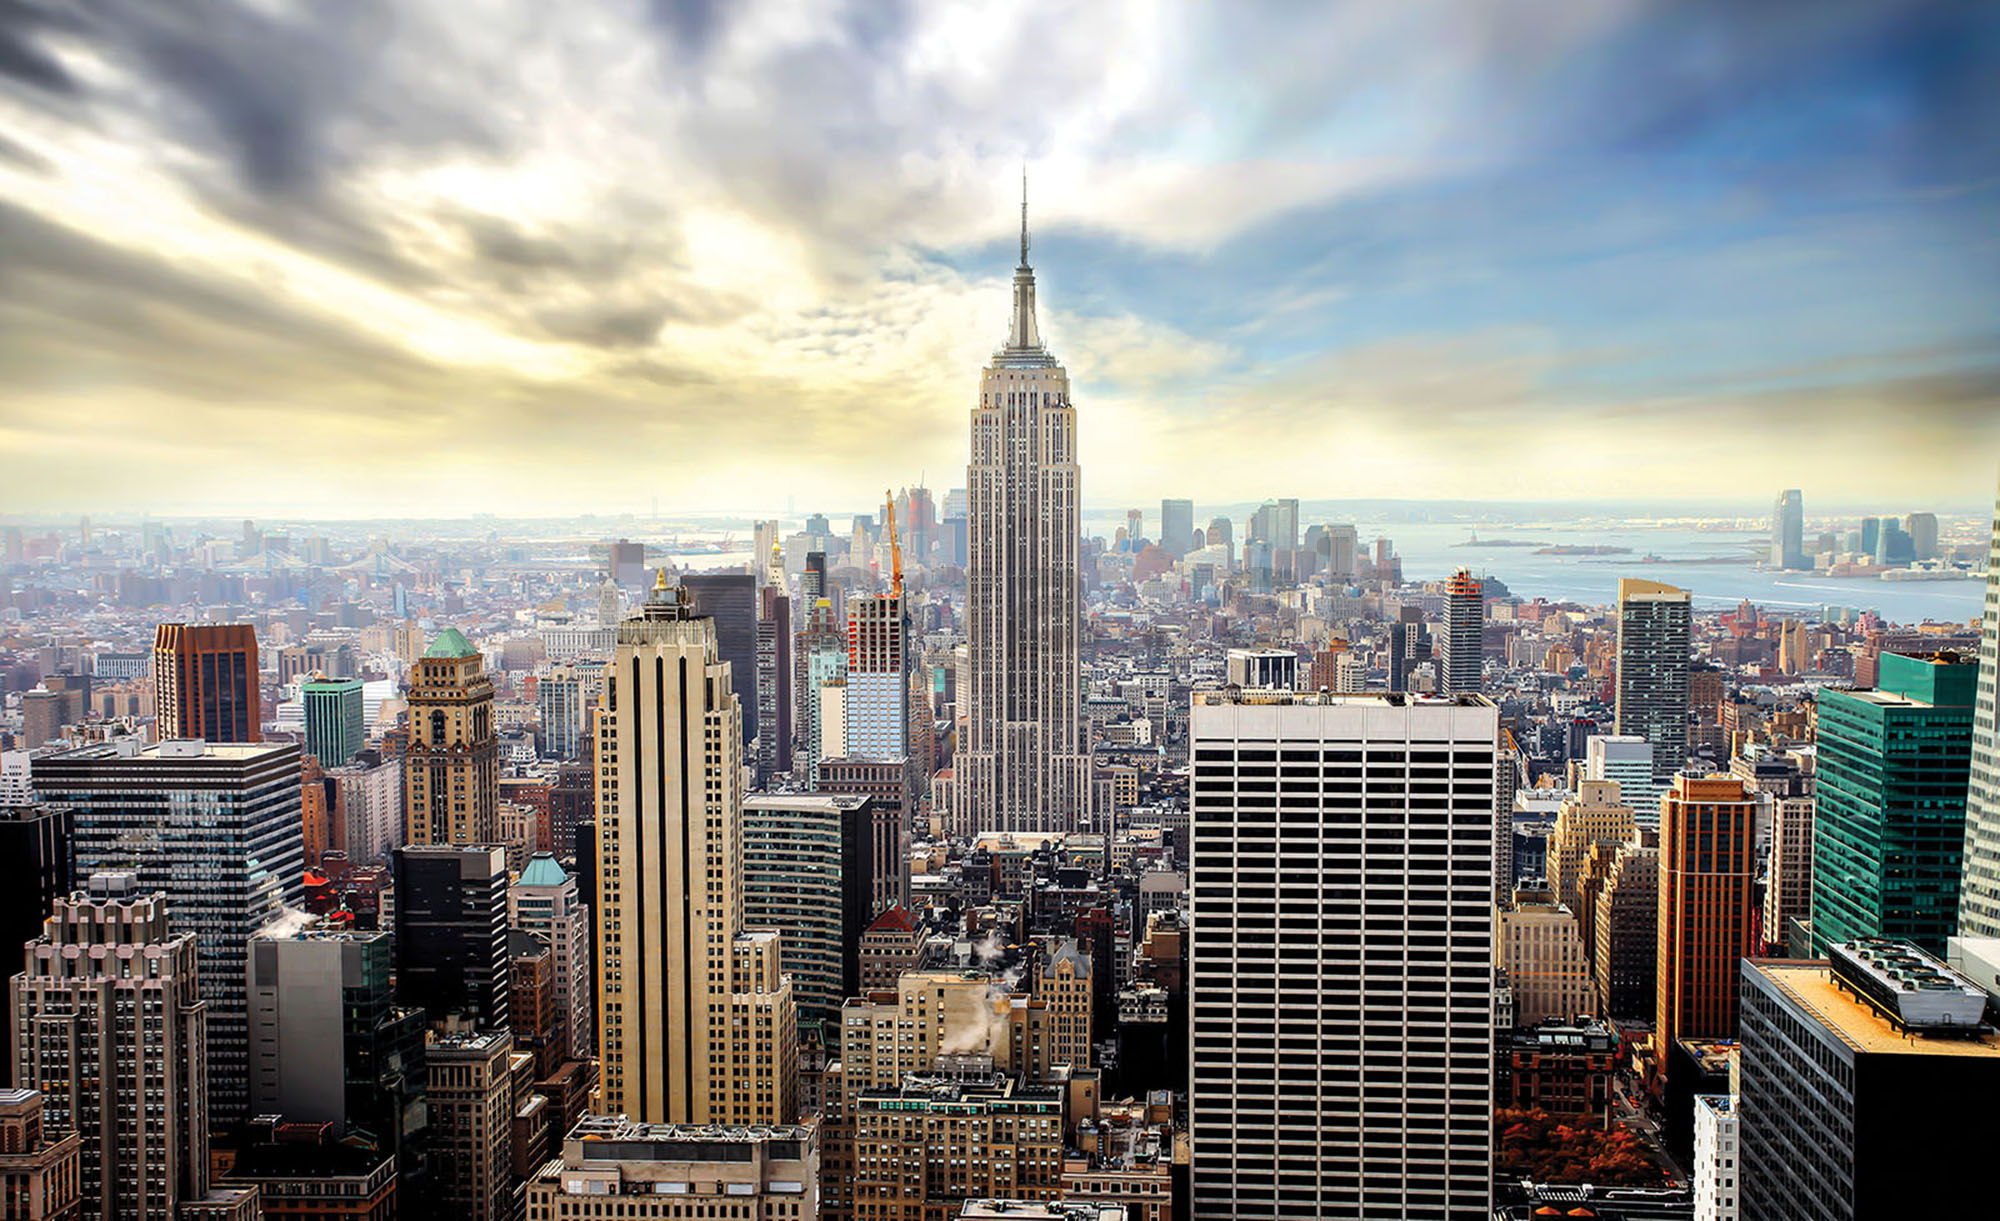 Fototapeta vliesová: Pohľad na Manhattan - 624x219 cm